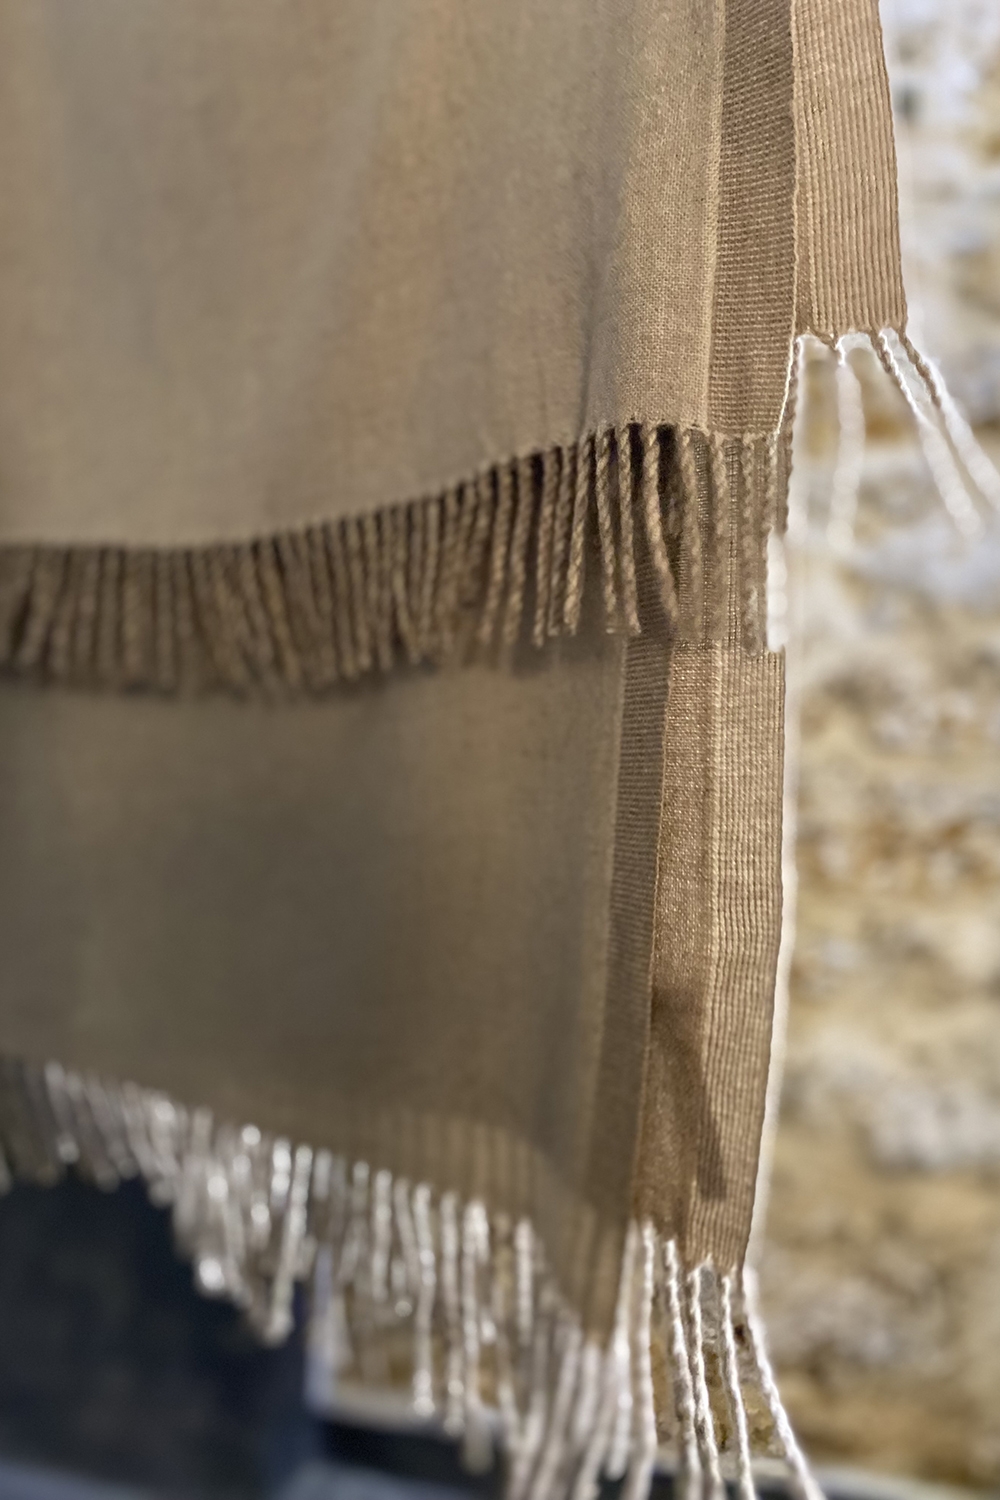 Cachemire accessoires couvertures plaids amadora 140 x 220 natural brown natural beige 140 x 220 cm